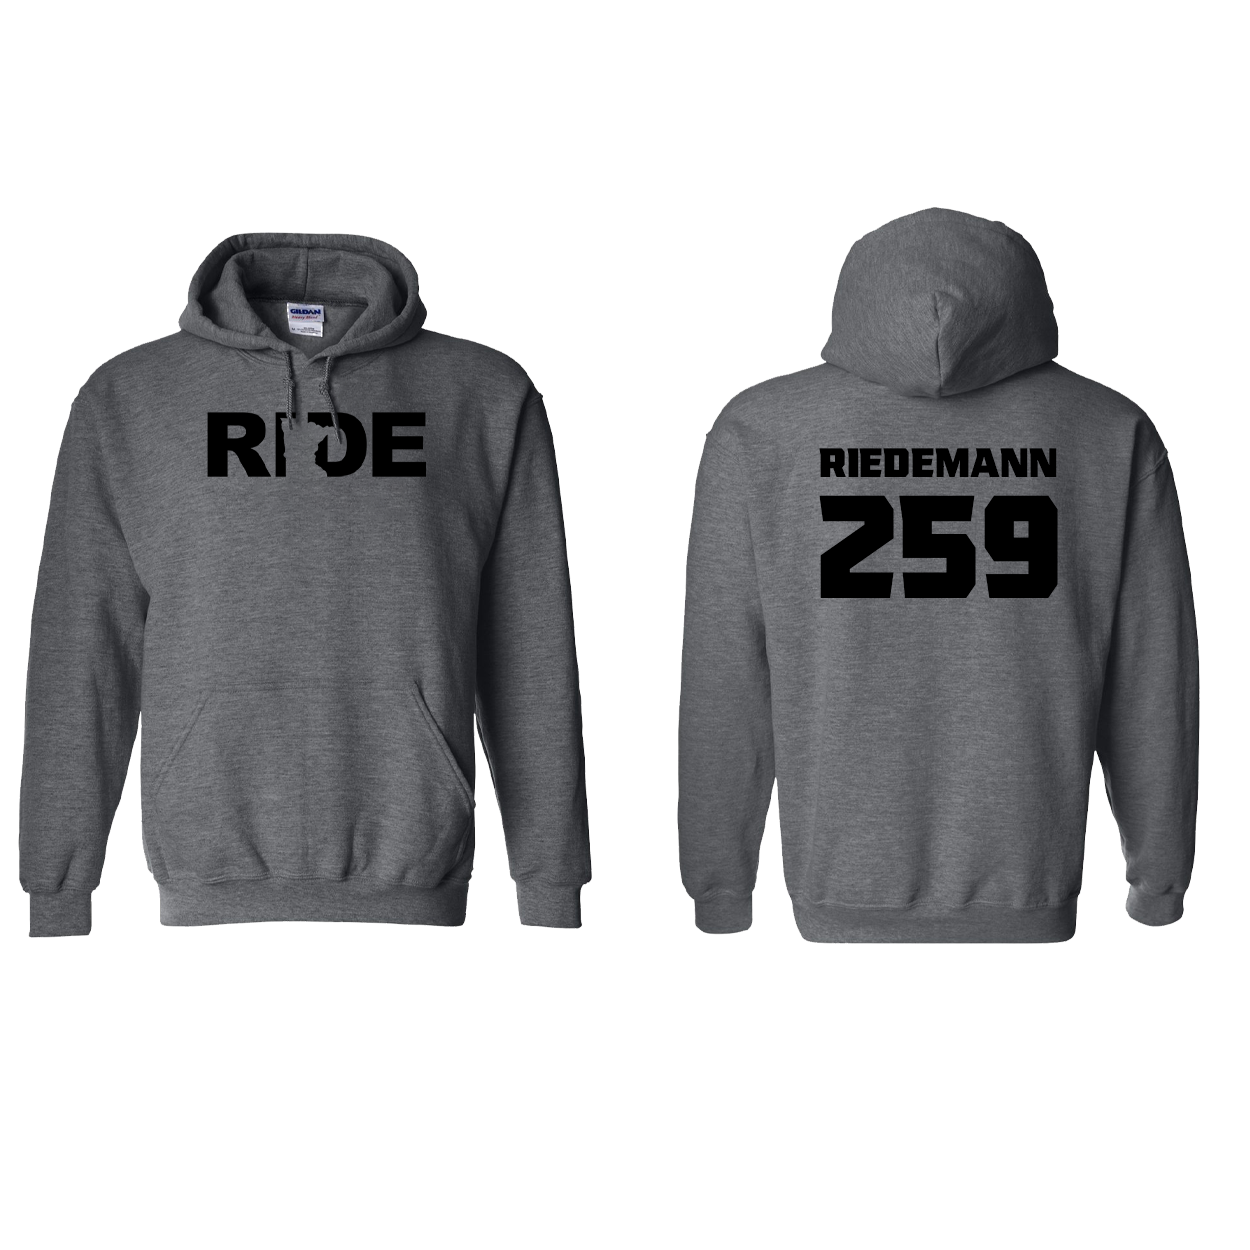 FXR BMX Race Team Classic Athlete Support Sweatshirt RIEDEMANN #259 Dark Heather (Black Logo)